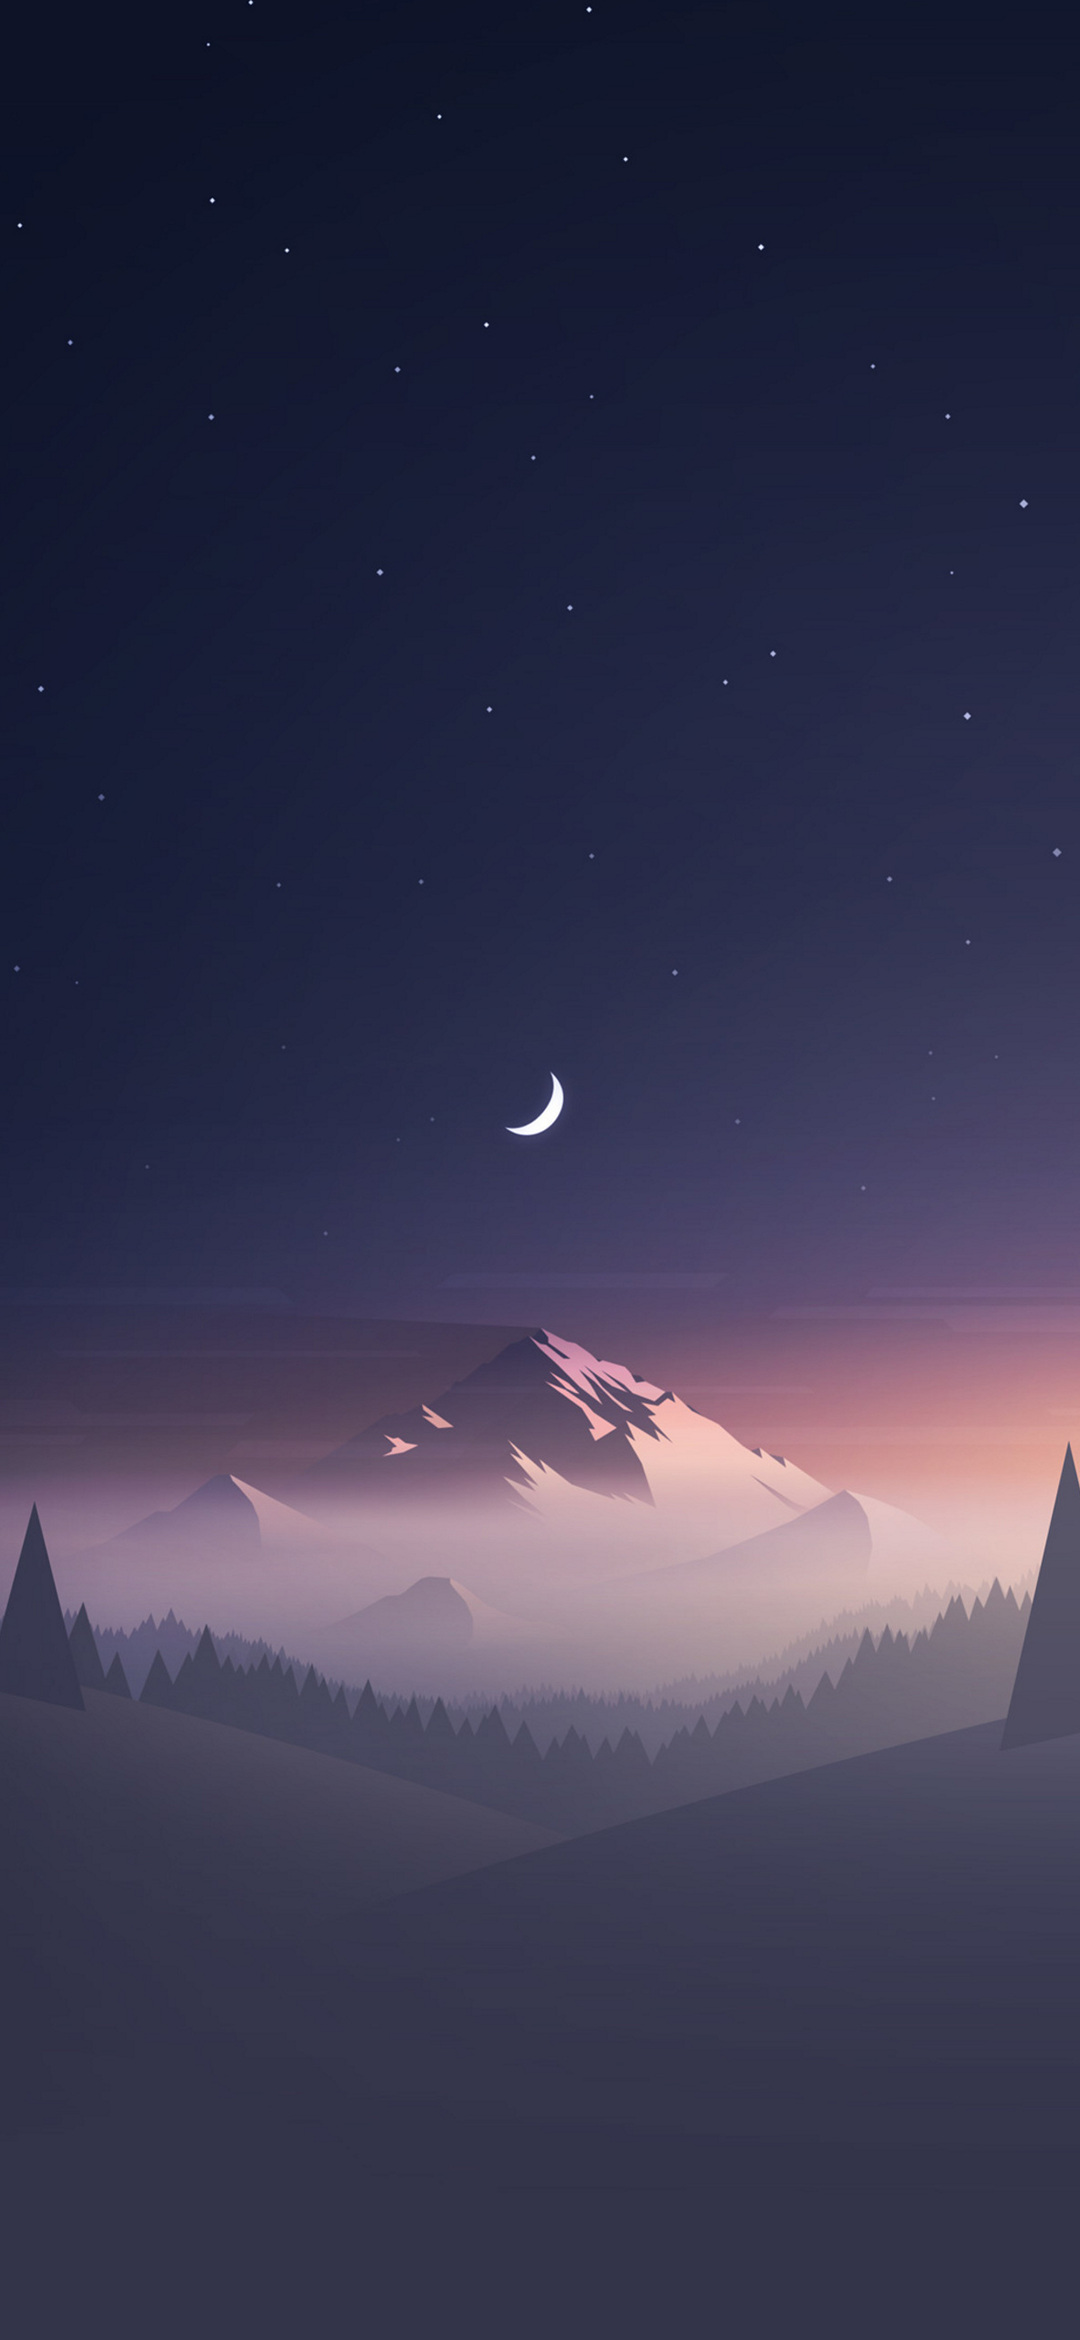 綺麗な星空と三日月と雪山のイラスト Google Pixel 5 Android 壁紙 待ち受け スマラン